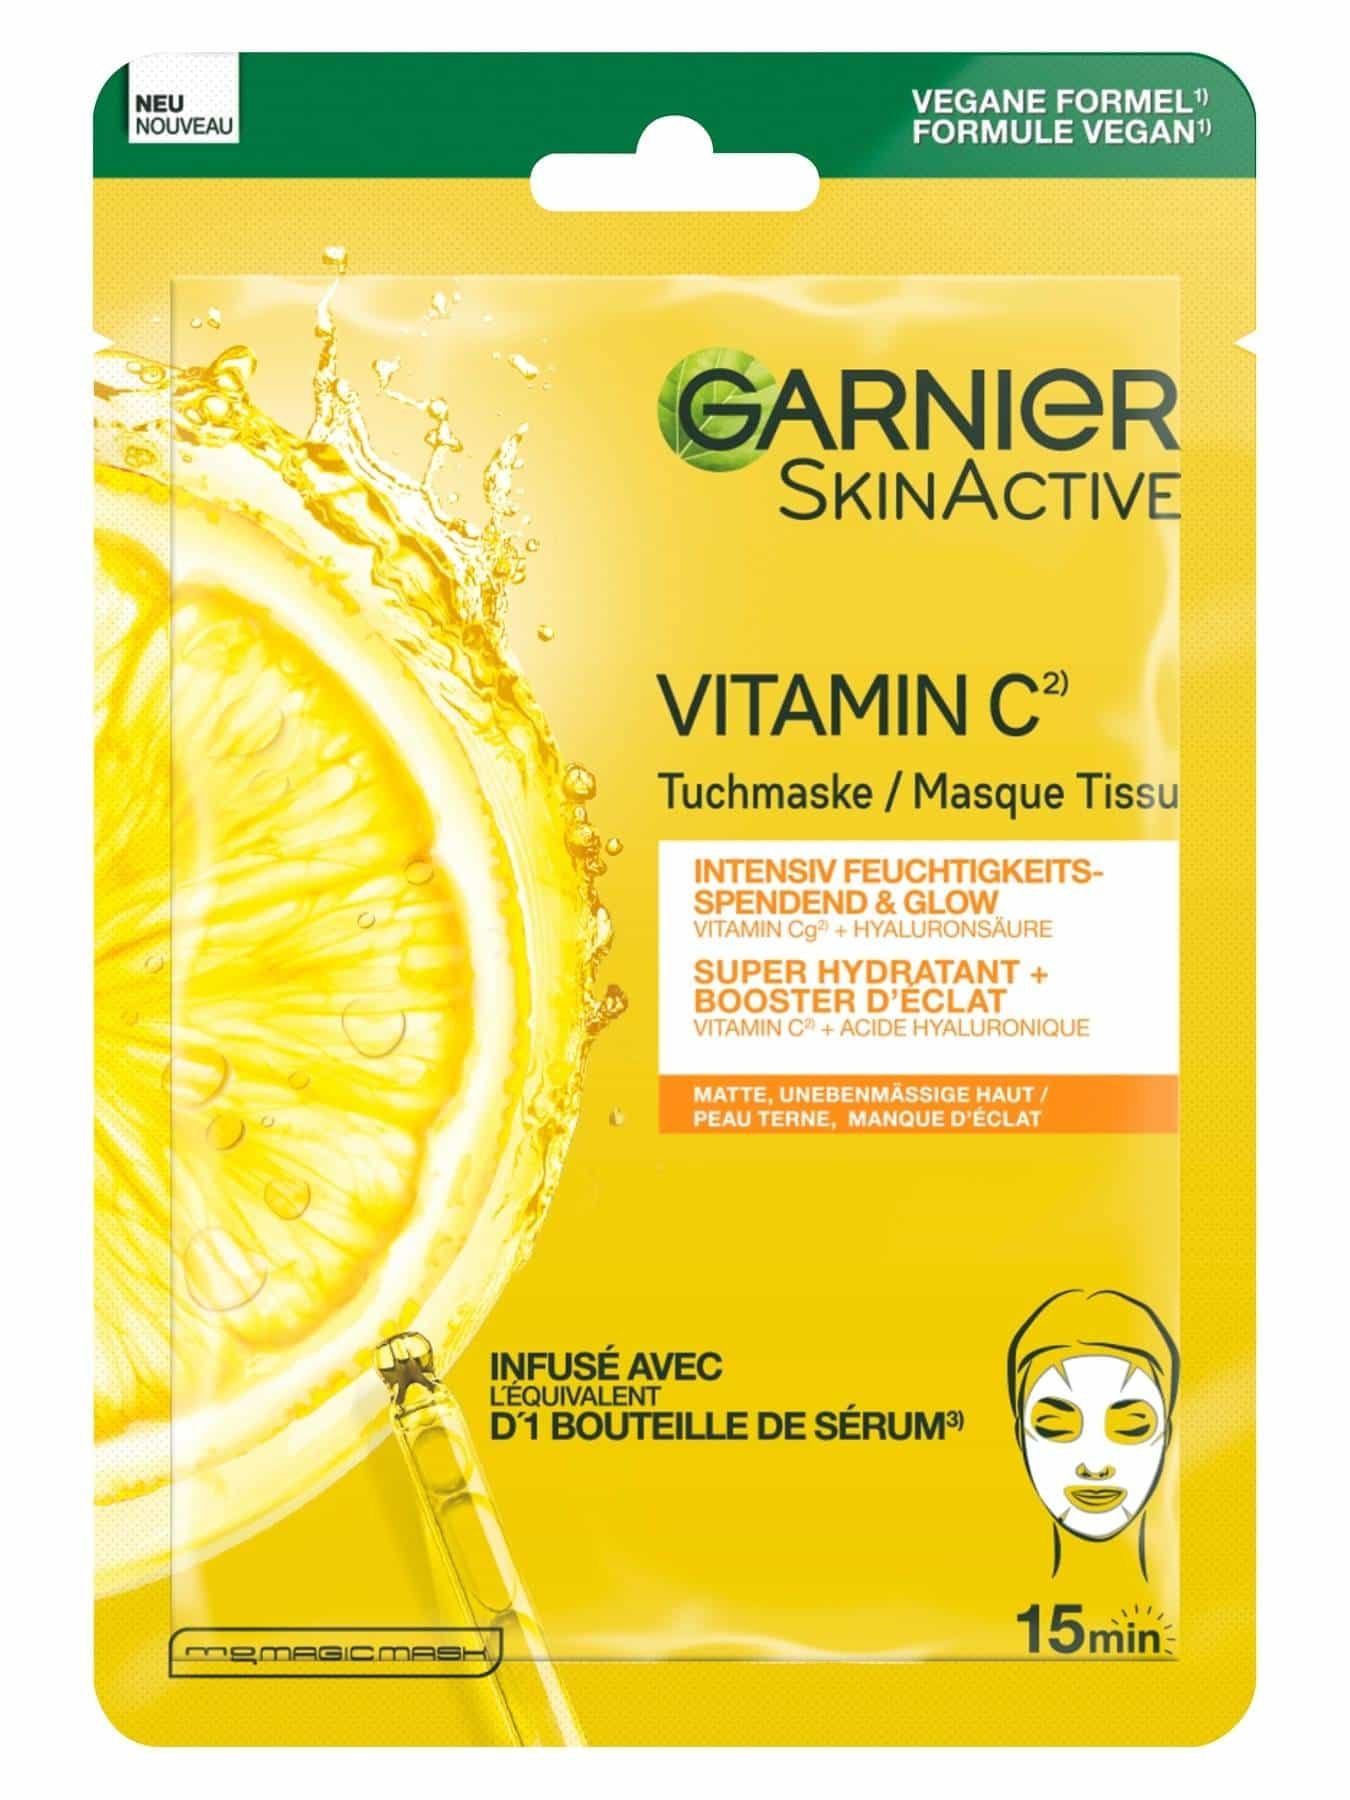 Garnier Skin Active Vitamin C Tuchmaske - Verpackung